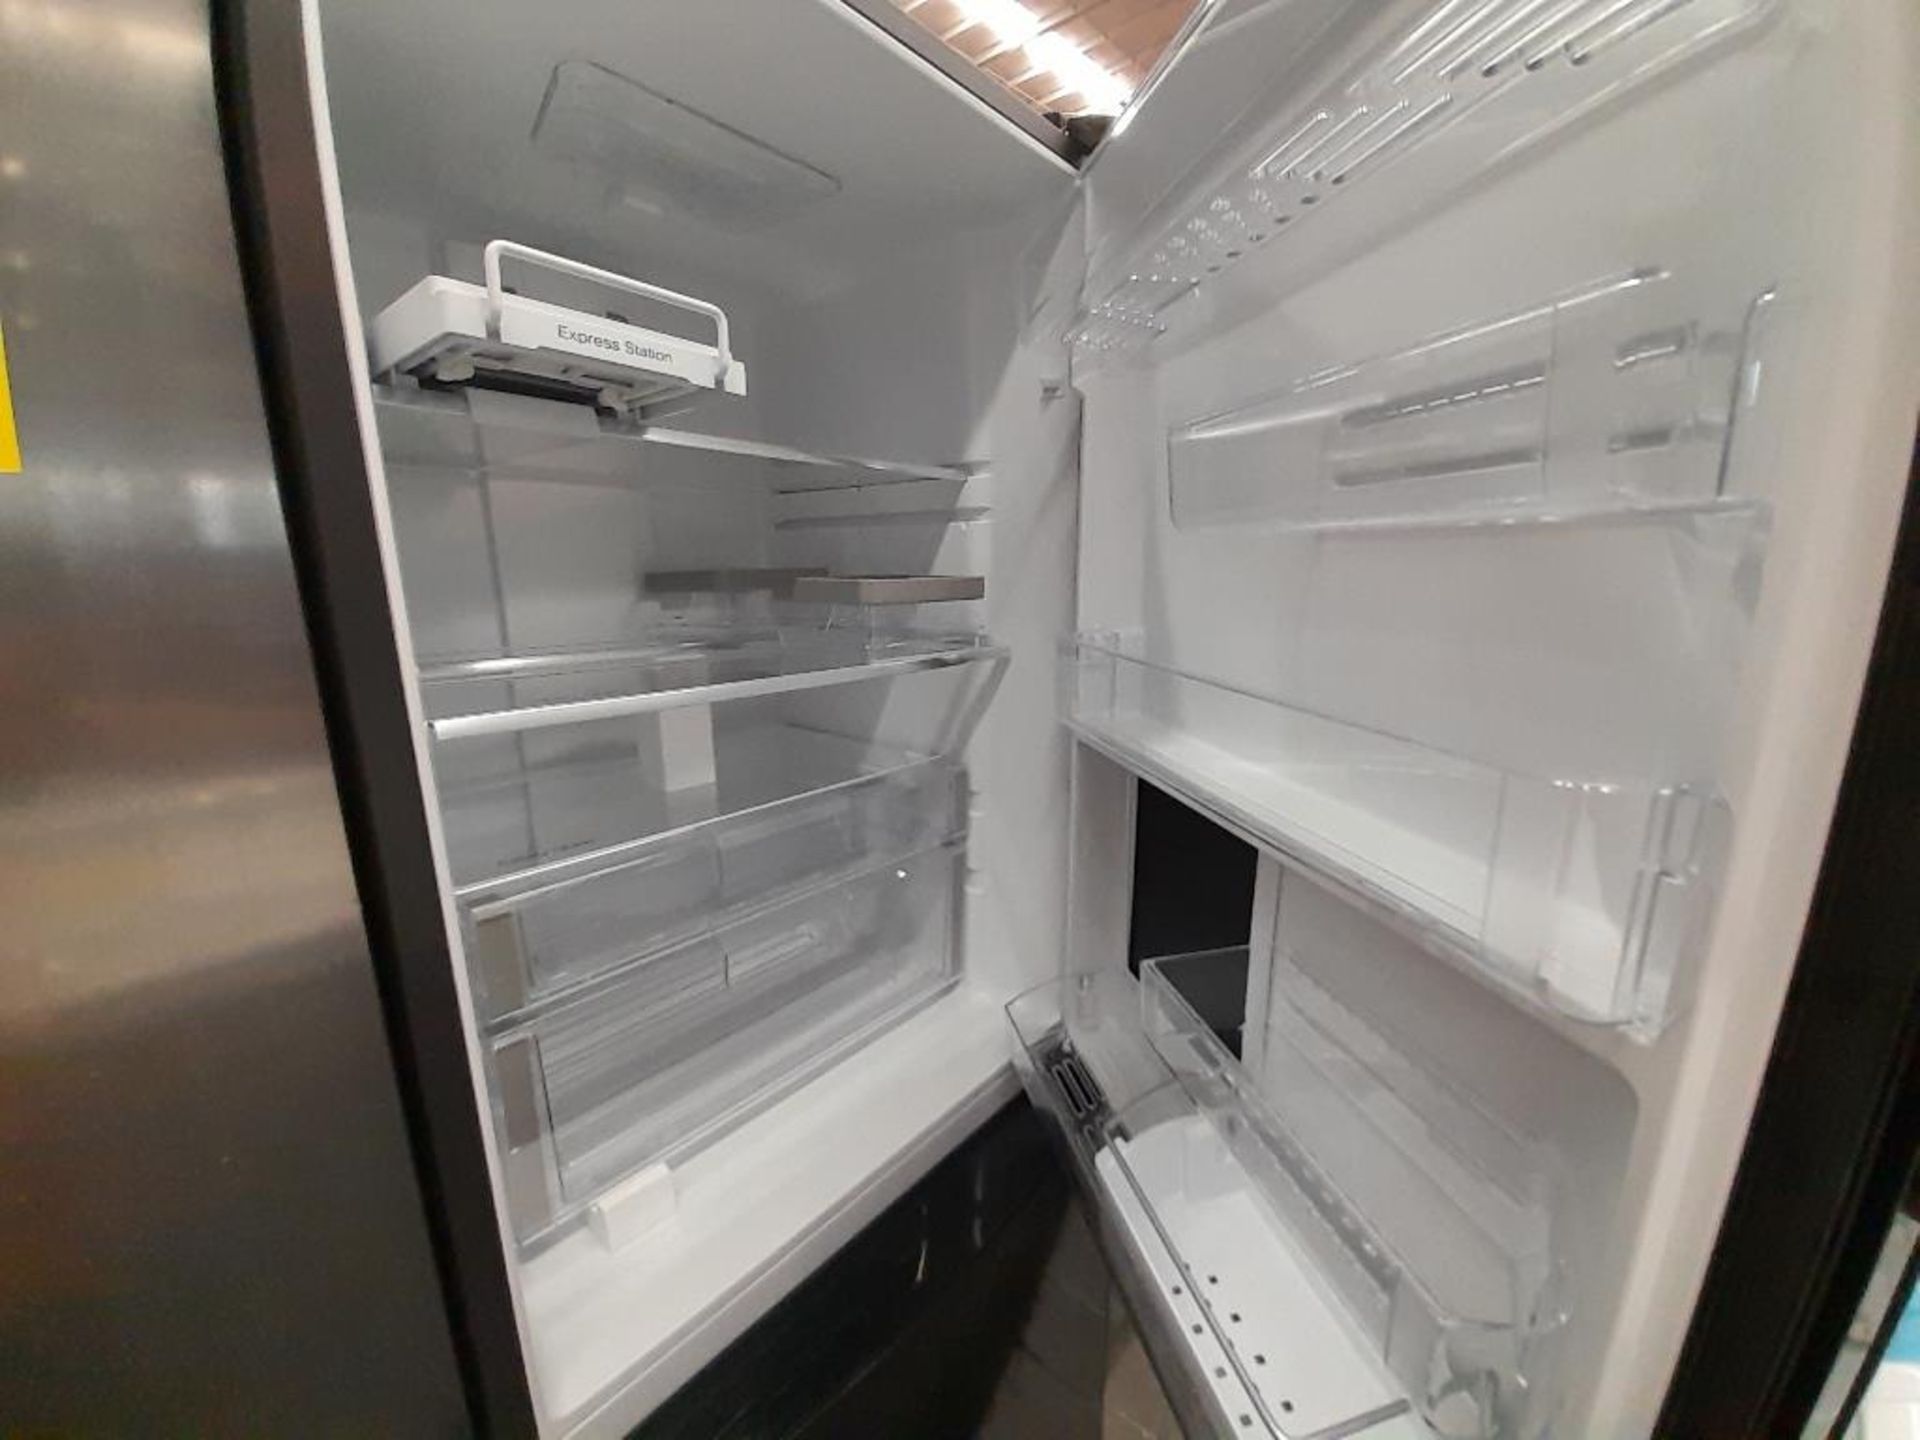 Lote de 2 refrigeradores contiene: 1 Refrigerador Marca MABE, Modelo IWMRP1, Serie ND, Color NEGRO; - Image 4 of 7